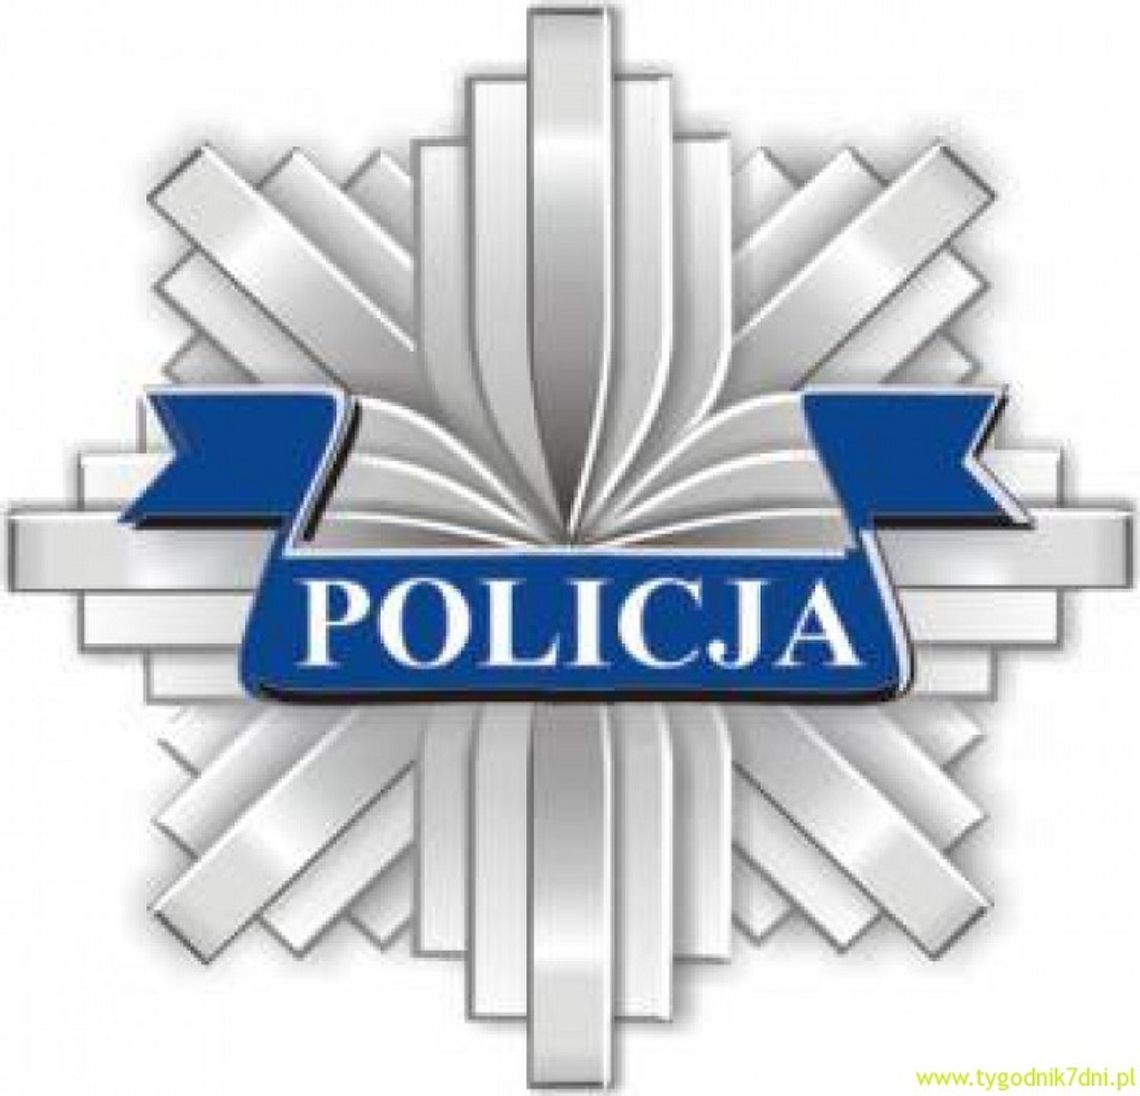 Włodawska policja zaprasza na debatę